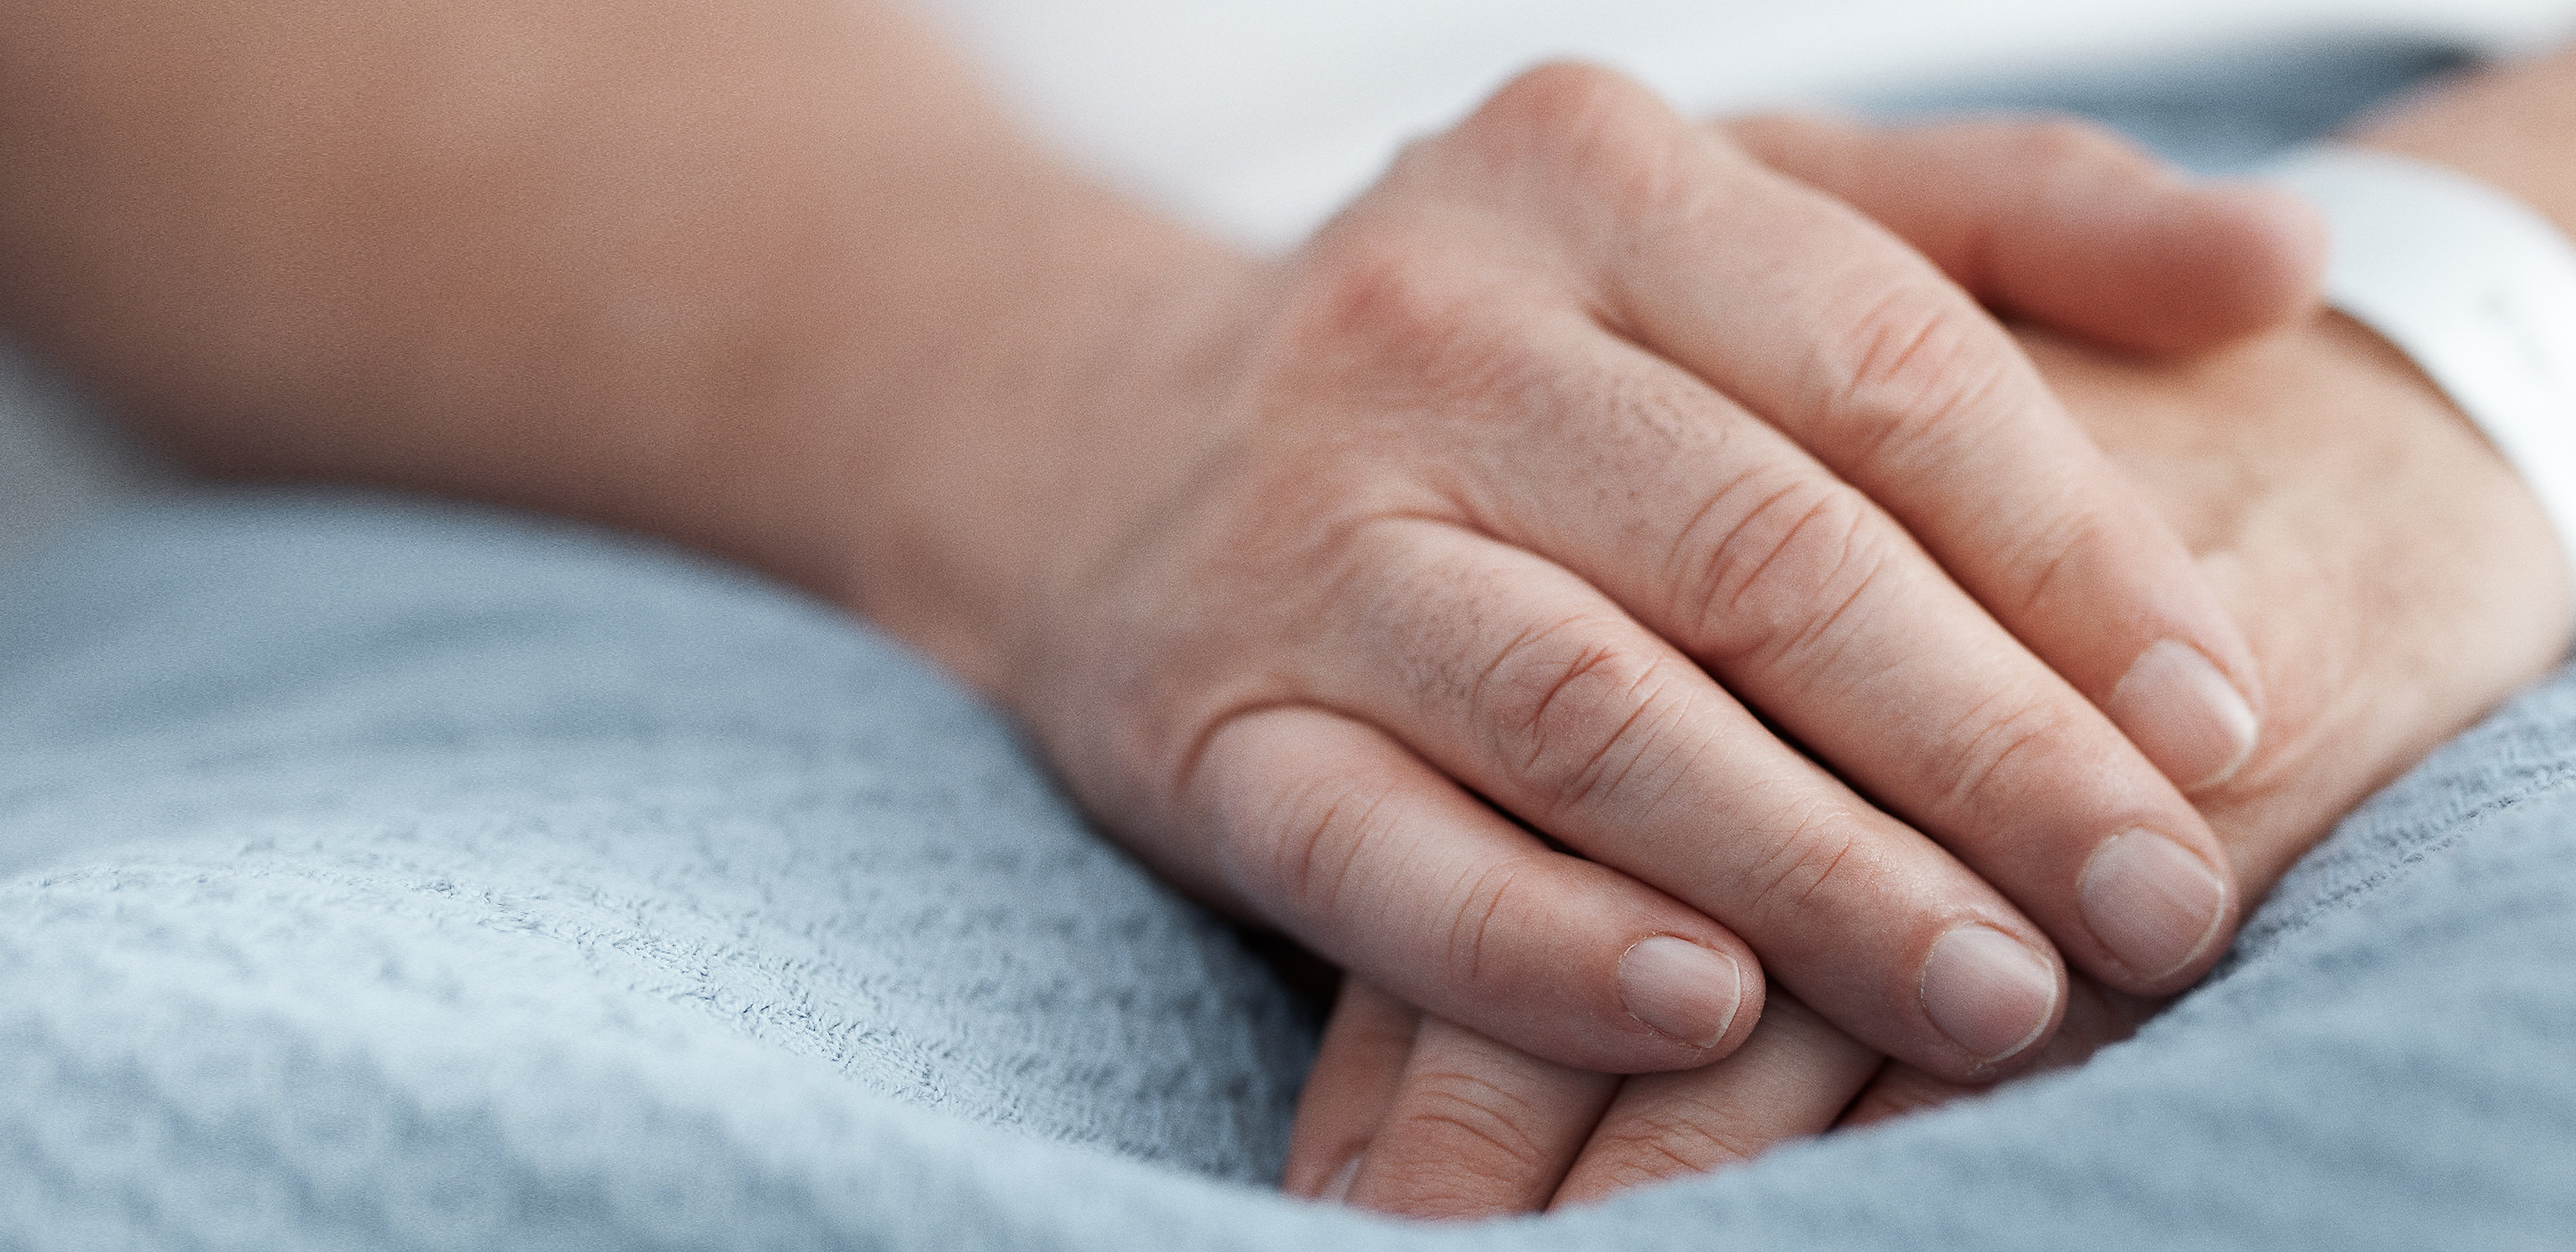 Le mani di un paziente si appoggiano delicatamente sulla coperta in un letto di ospedale